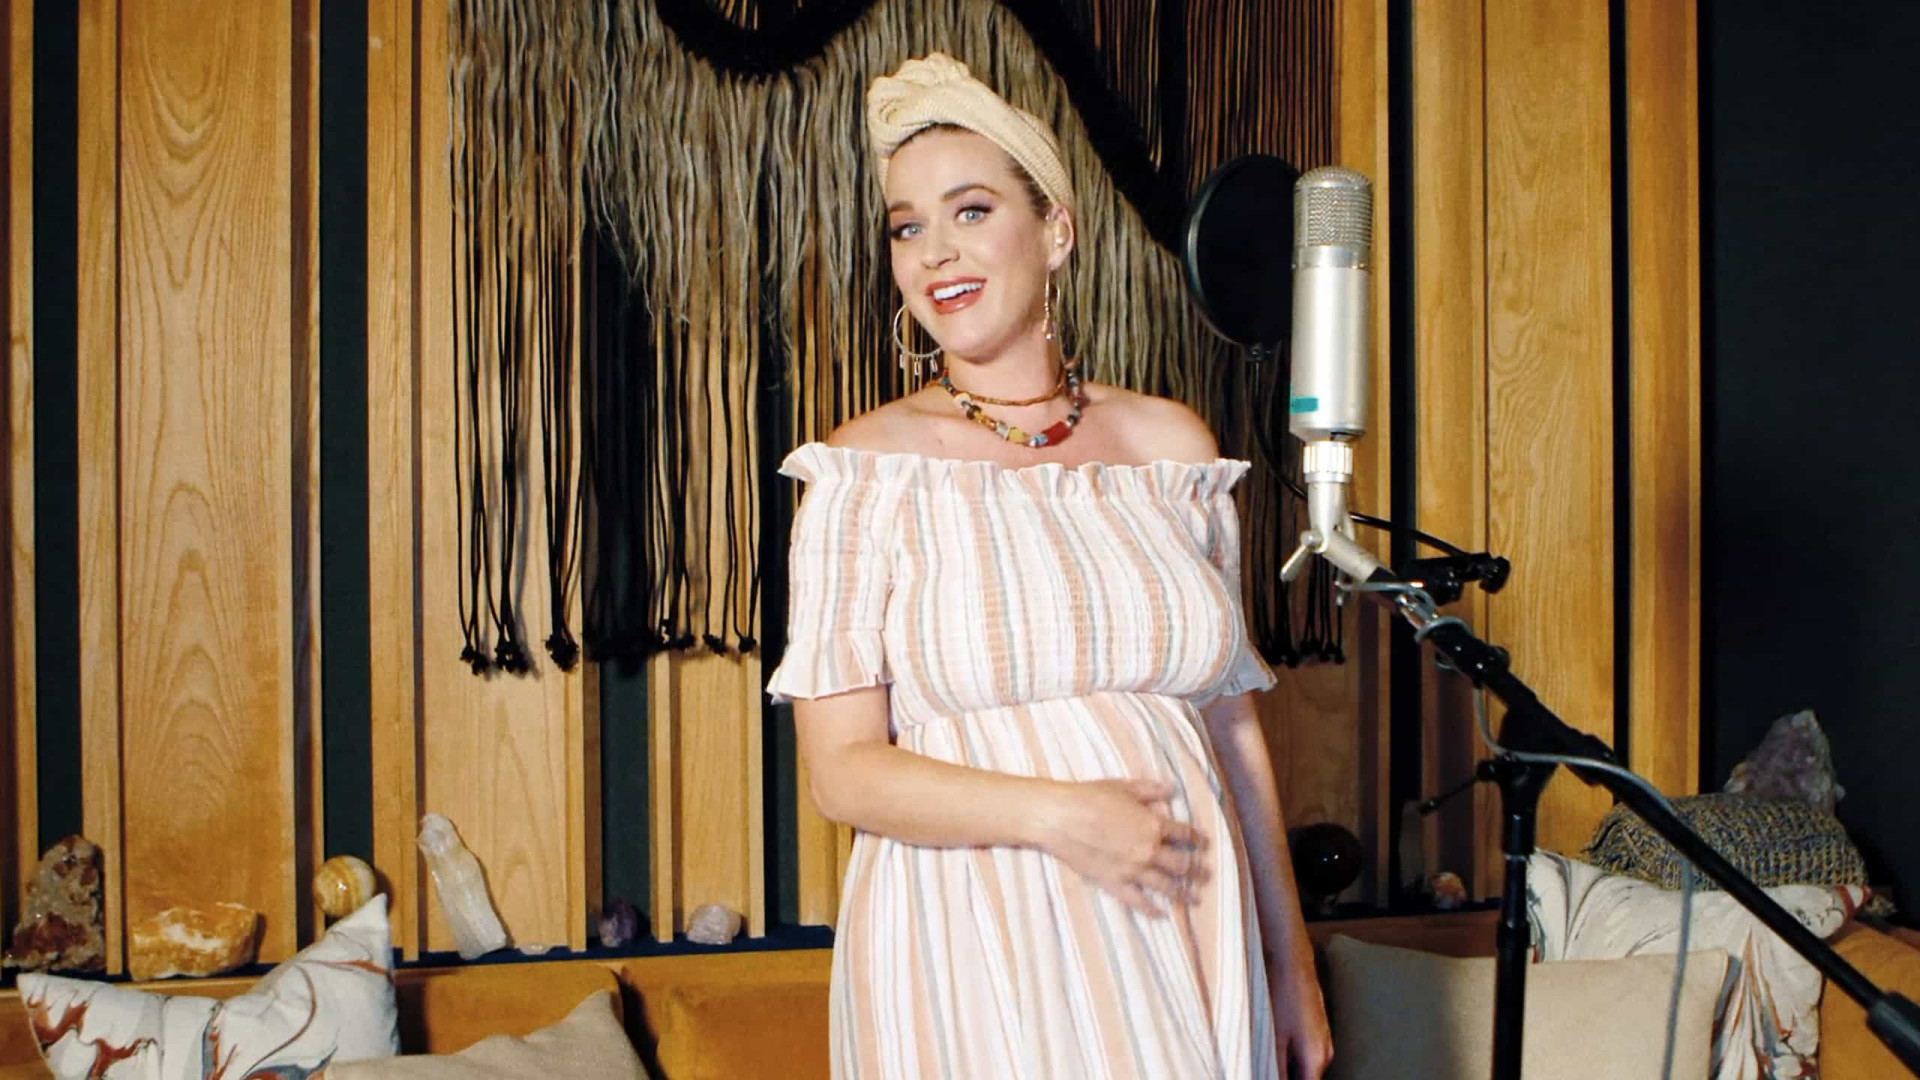 Grávida, Katy Perry aparece nua no clipe de 'Daisies', sua nova música